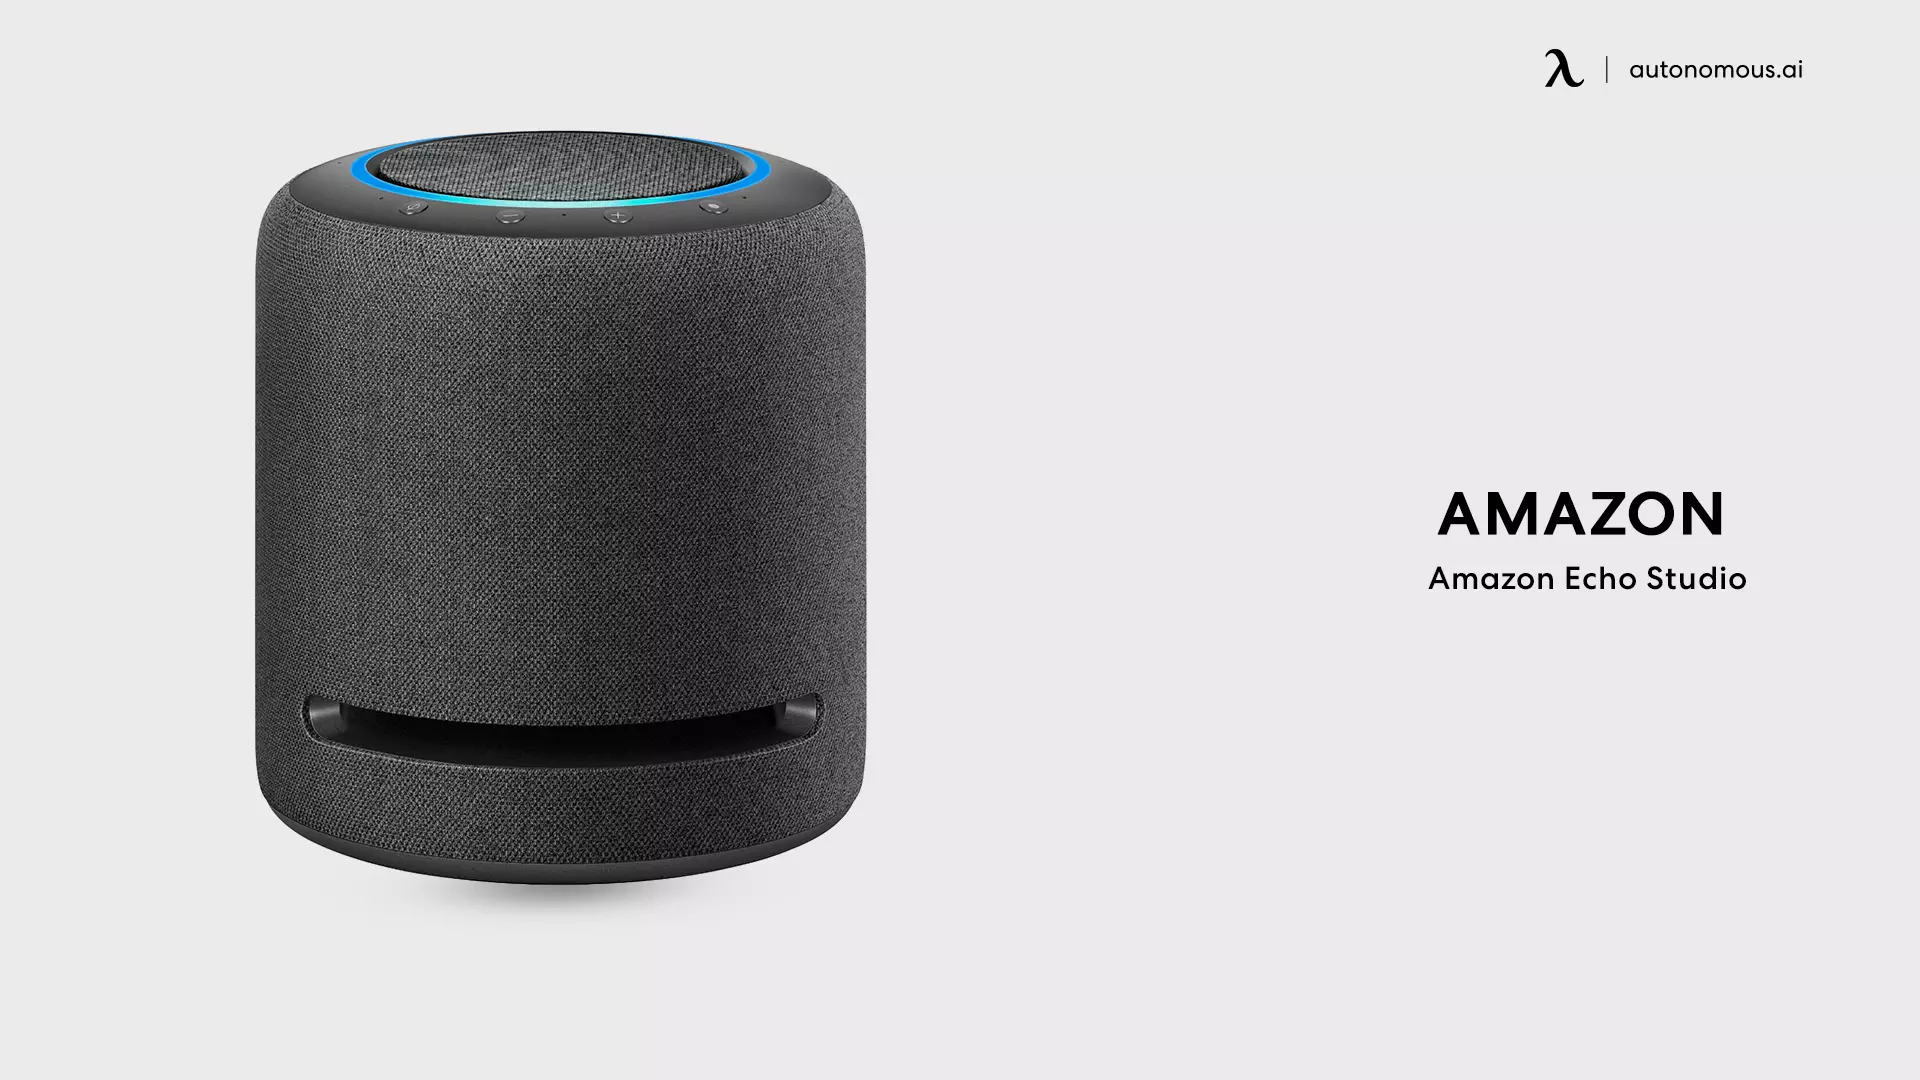 Amazon Echo Studio - best smart speaker